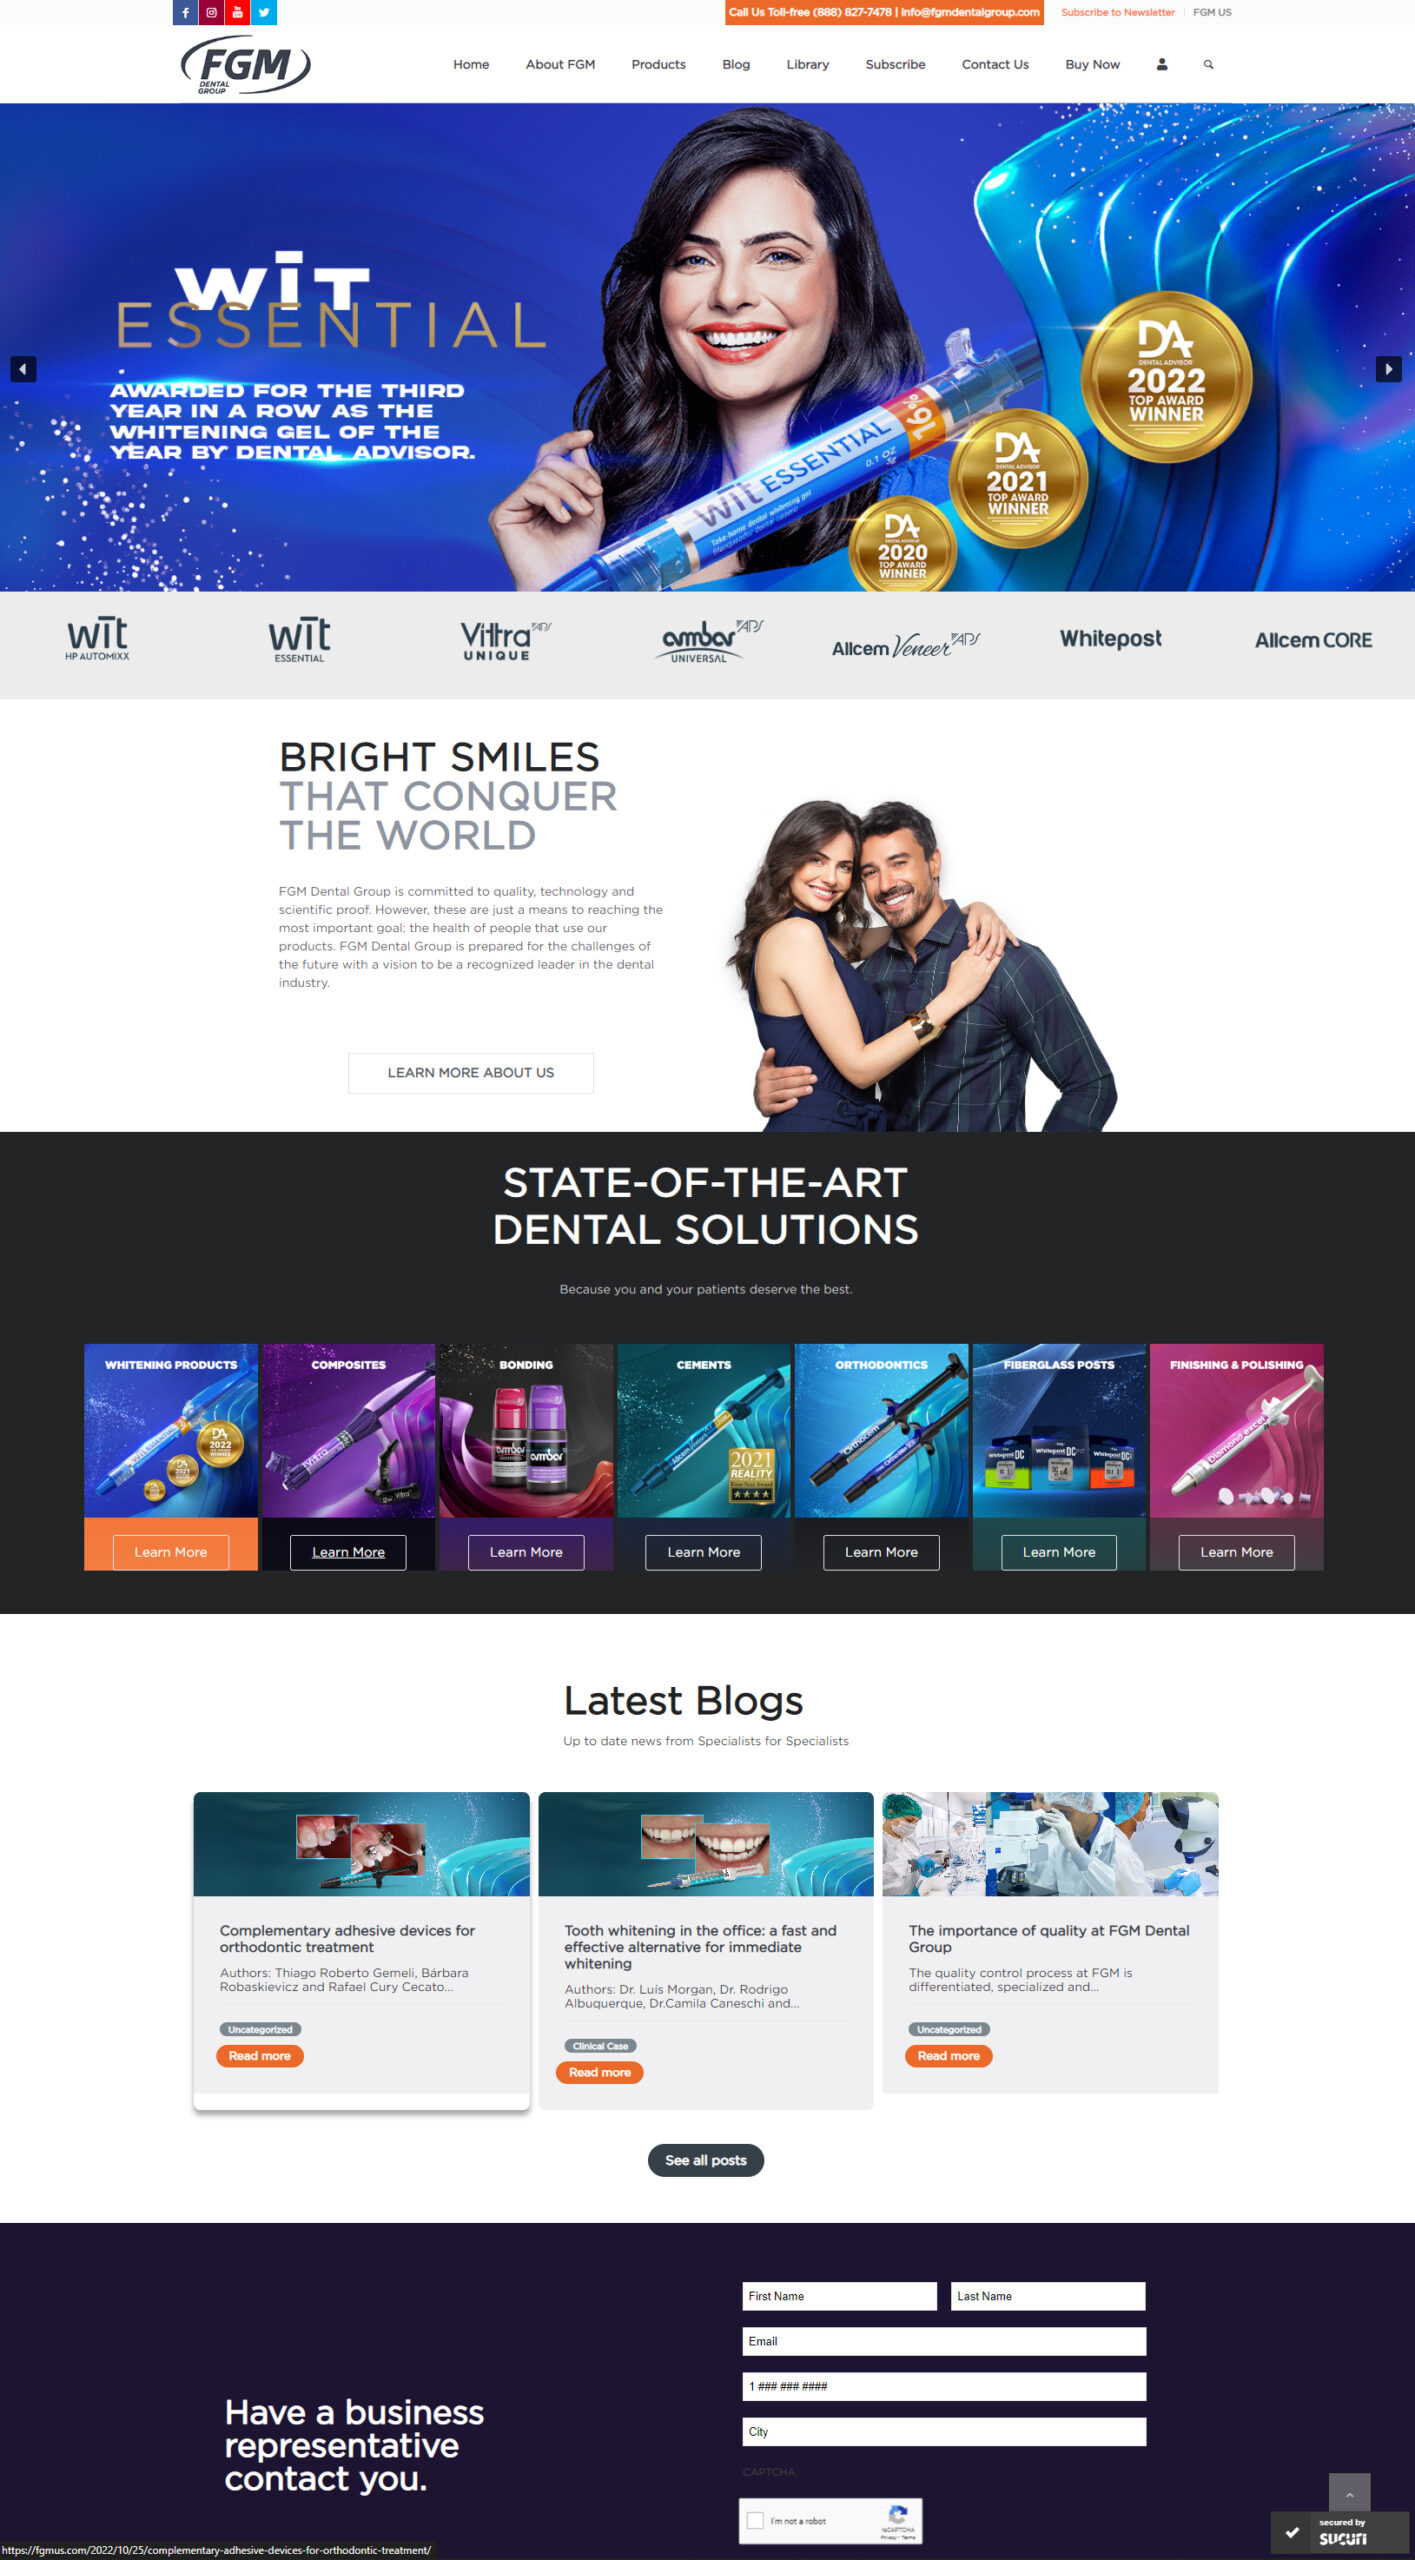 Website US 01 scaled - FGM Dental Group, uma marca cada vez mais globalizada